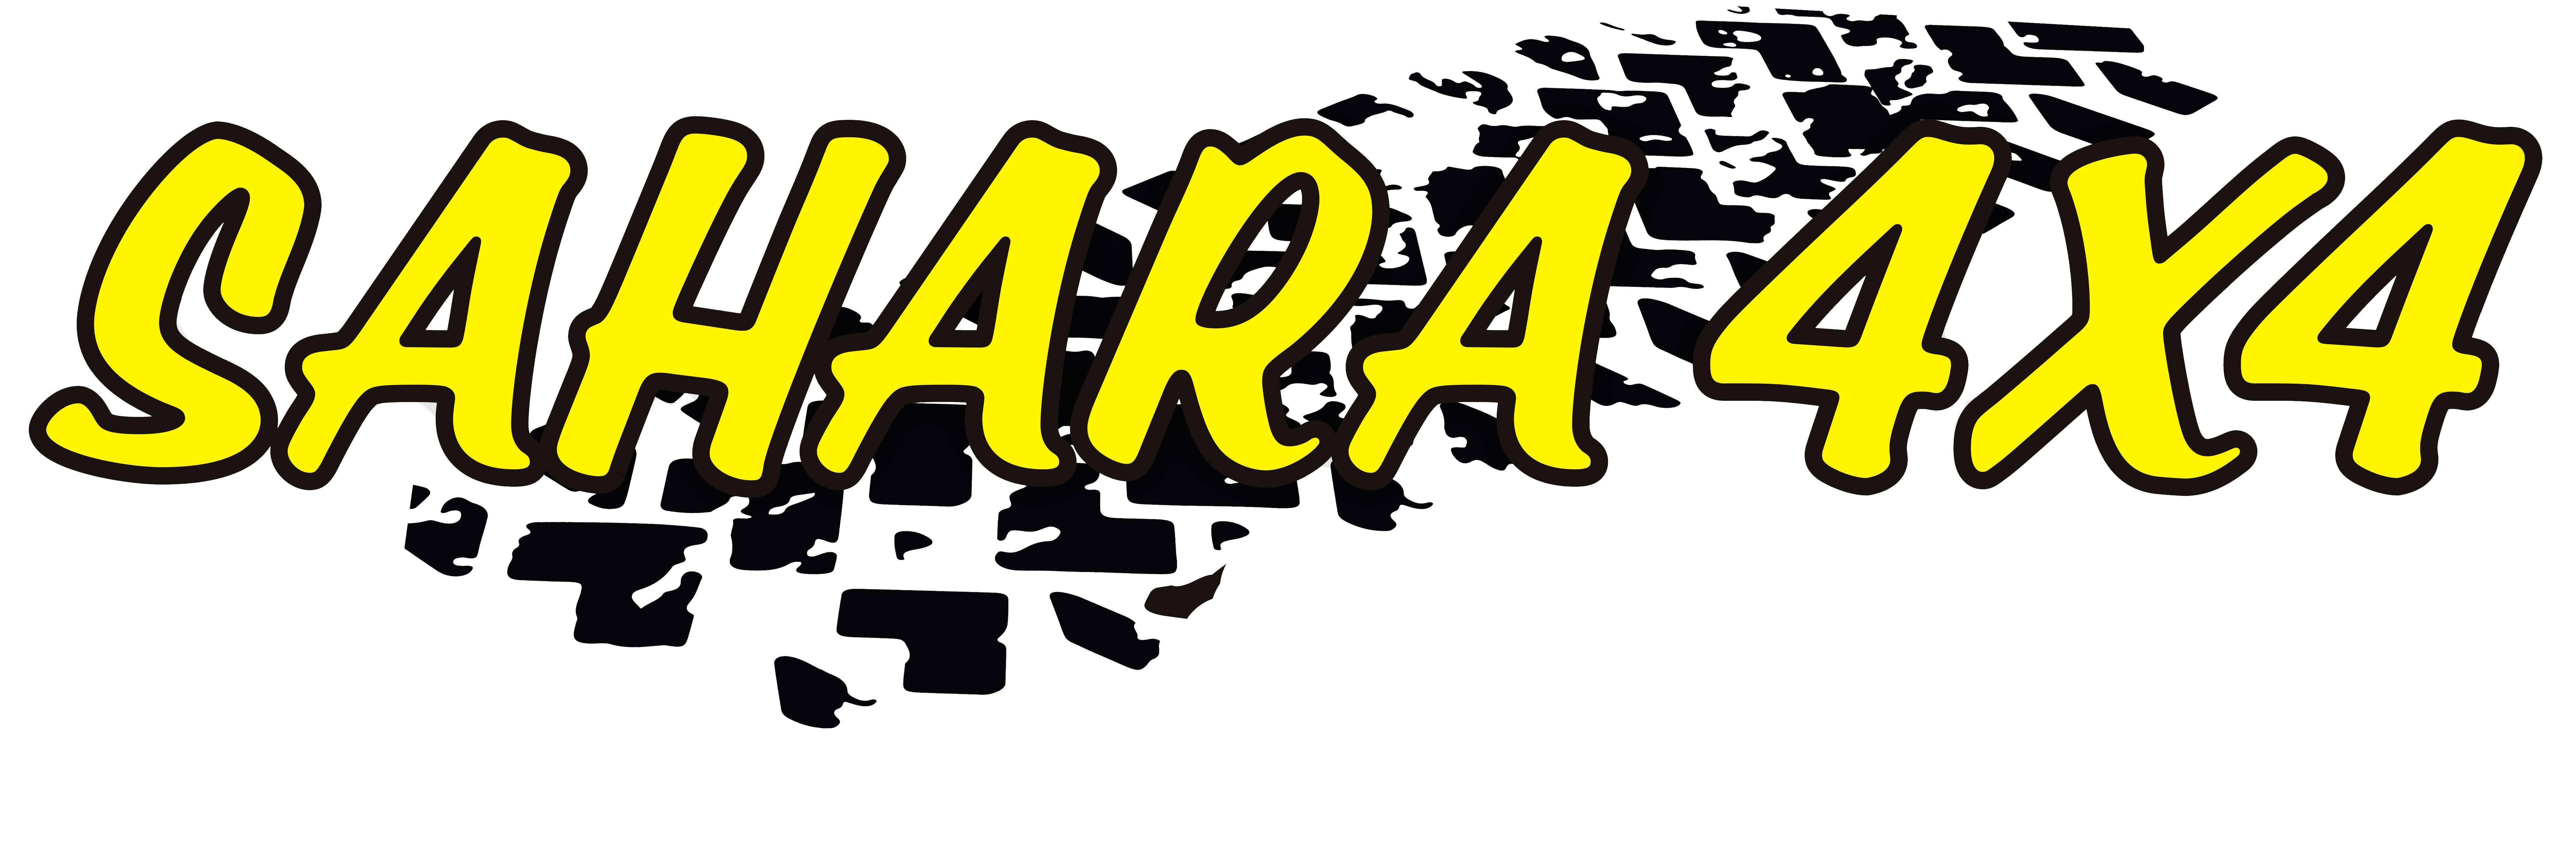 Sahara 4x4 Sponsor